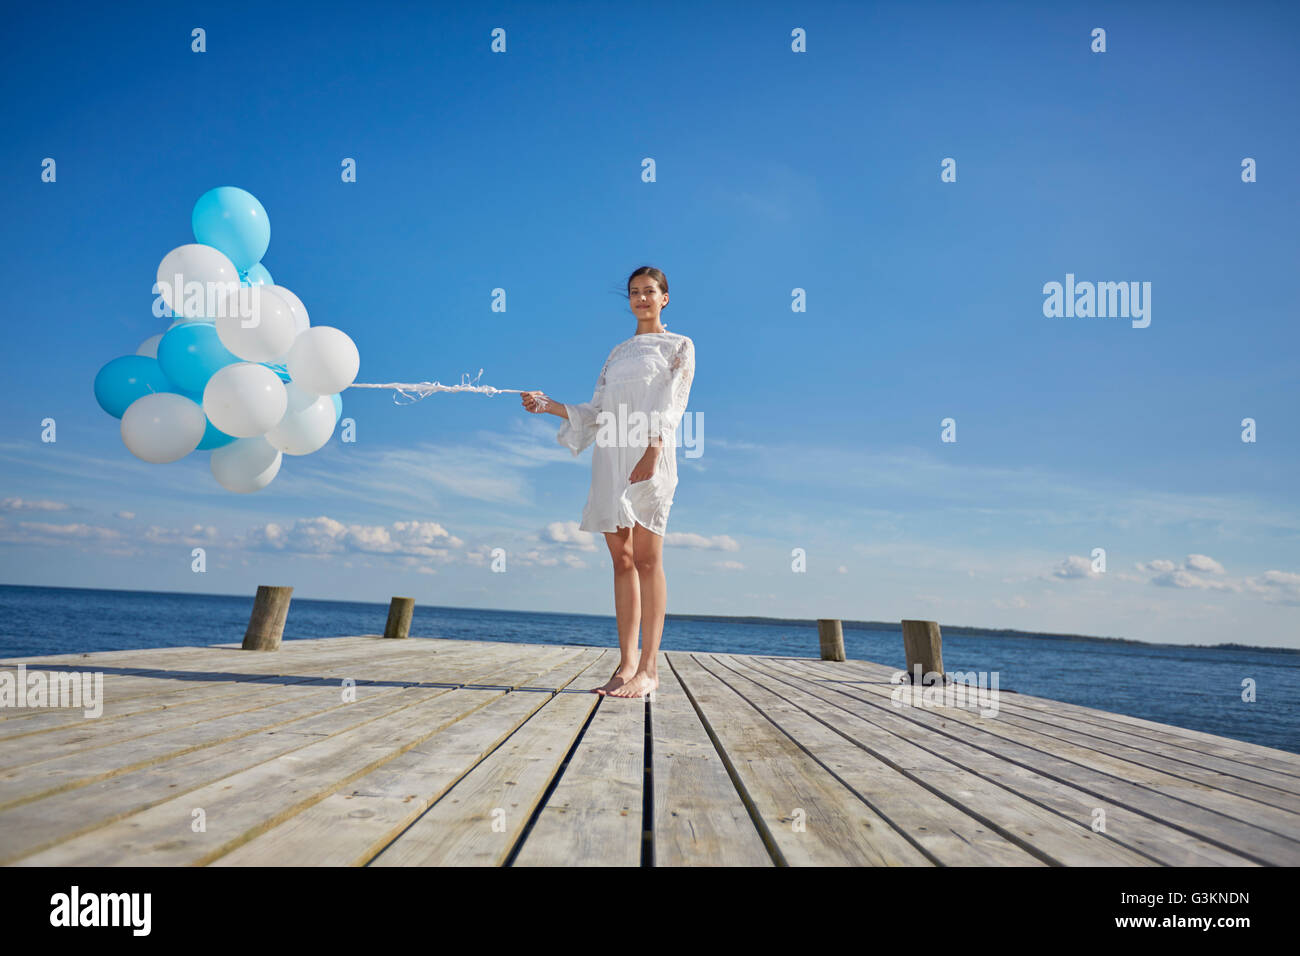 Portrait de jeune femme, debout sur la jetée en bois, holding bunch of balloons Banque D'Images